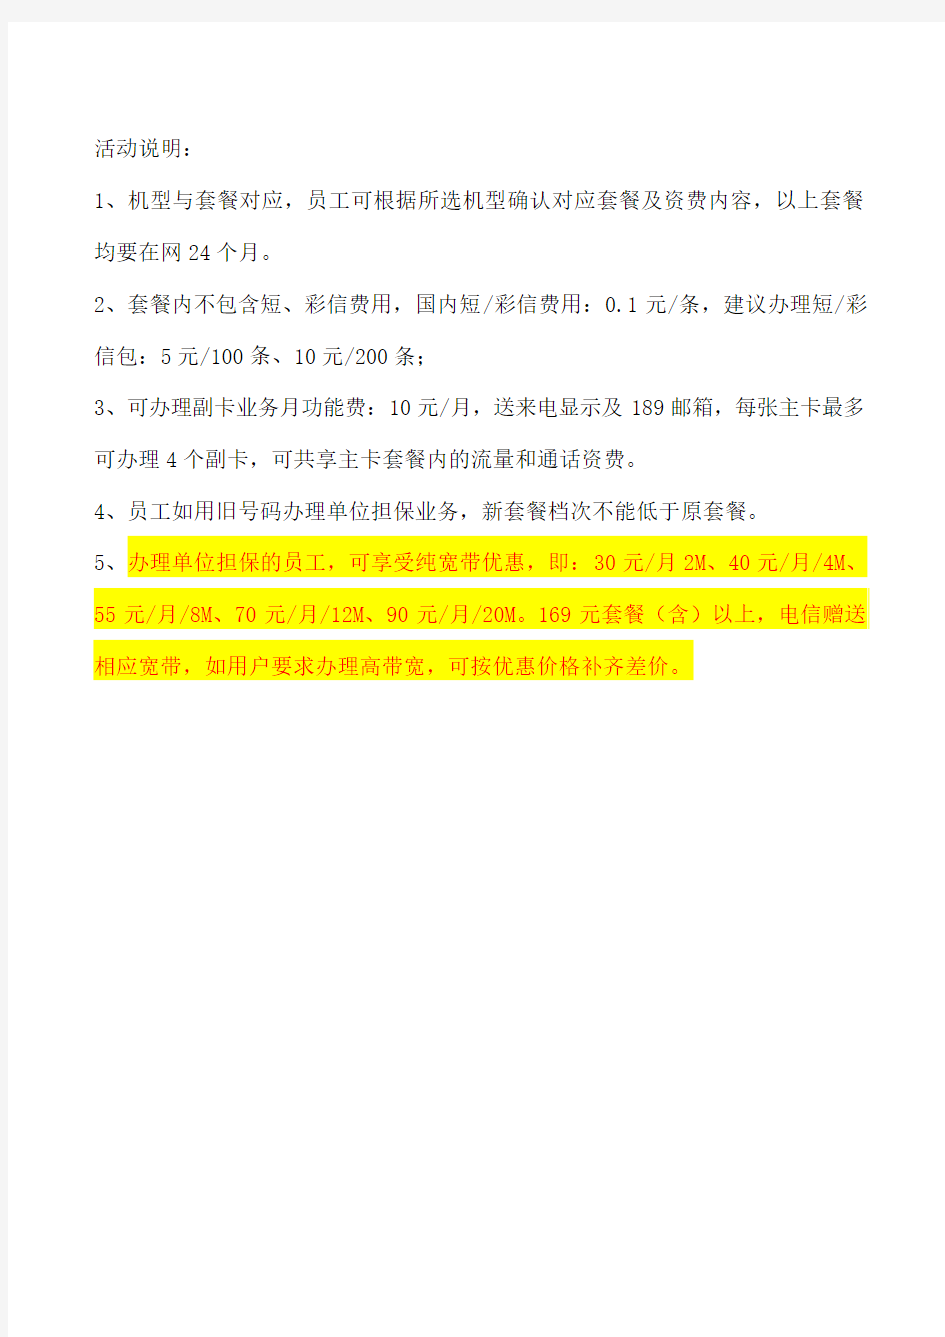 中国电信南宁分公司4G优惠活动方案